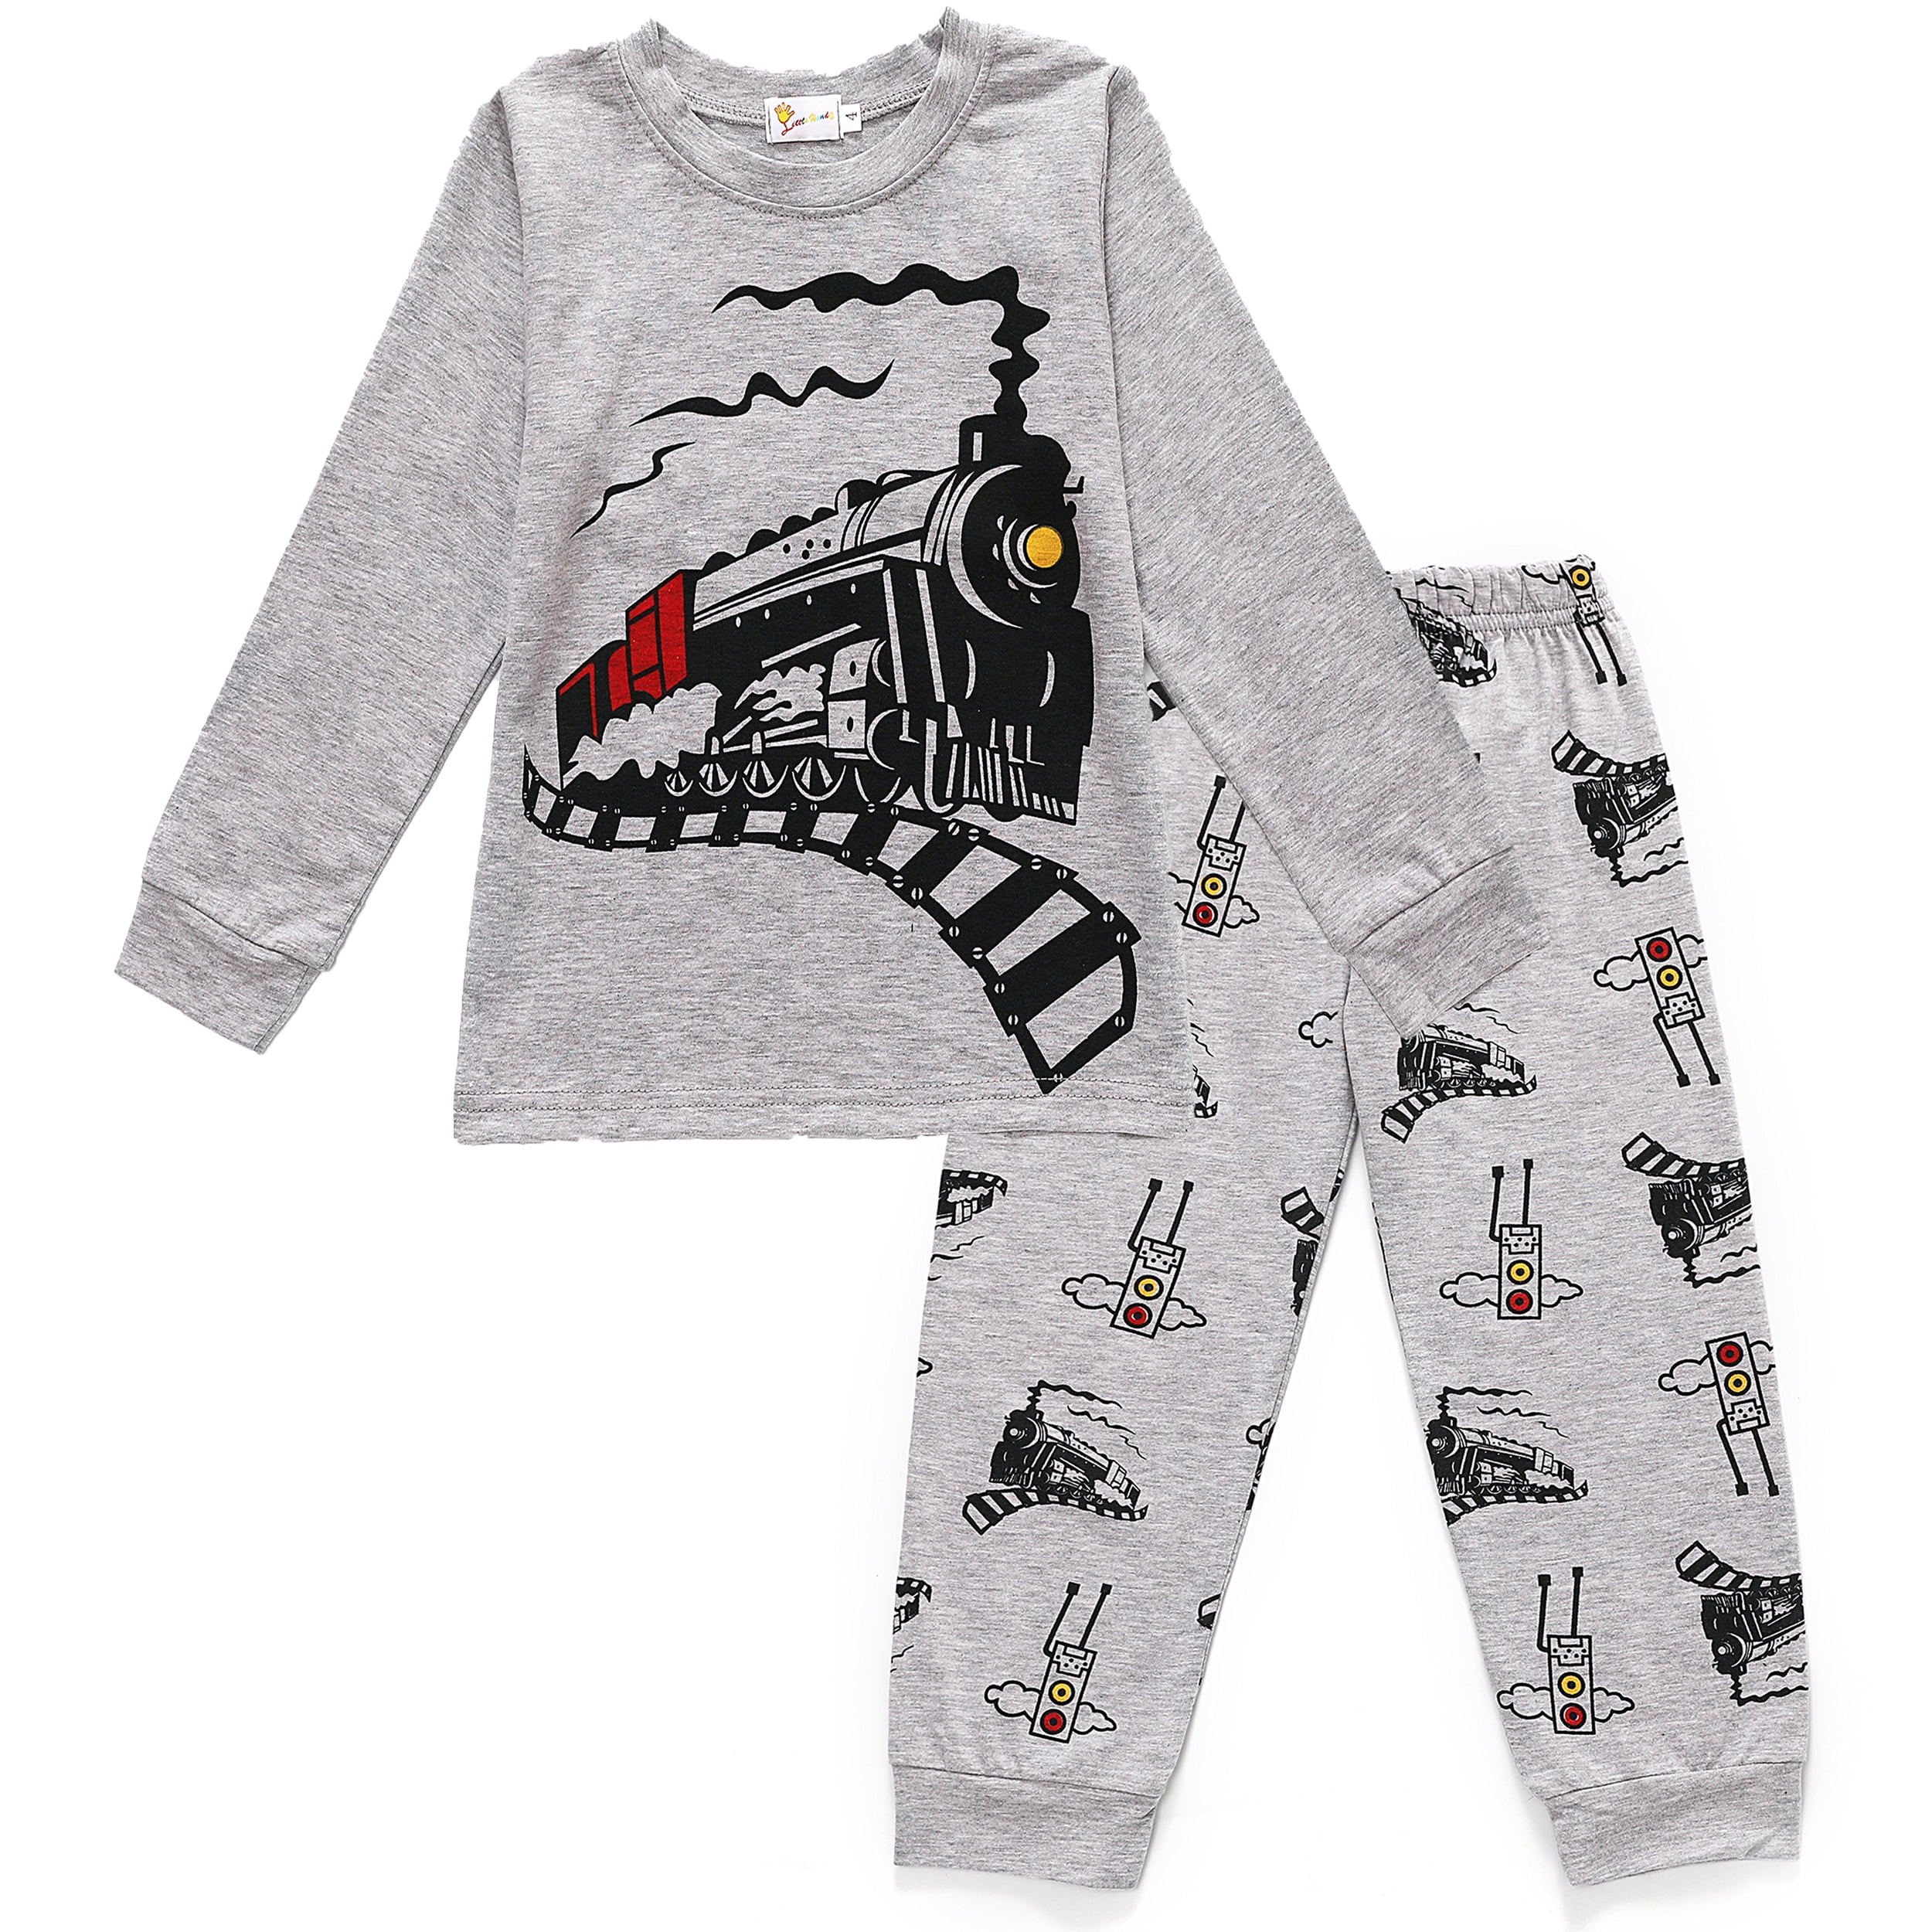 Family Feeling Boys Girls Pajamas Toddler Pjs 100% Cotton Kids Sleepwears 